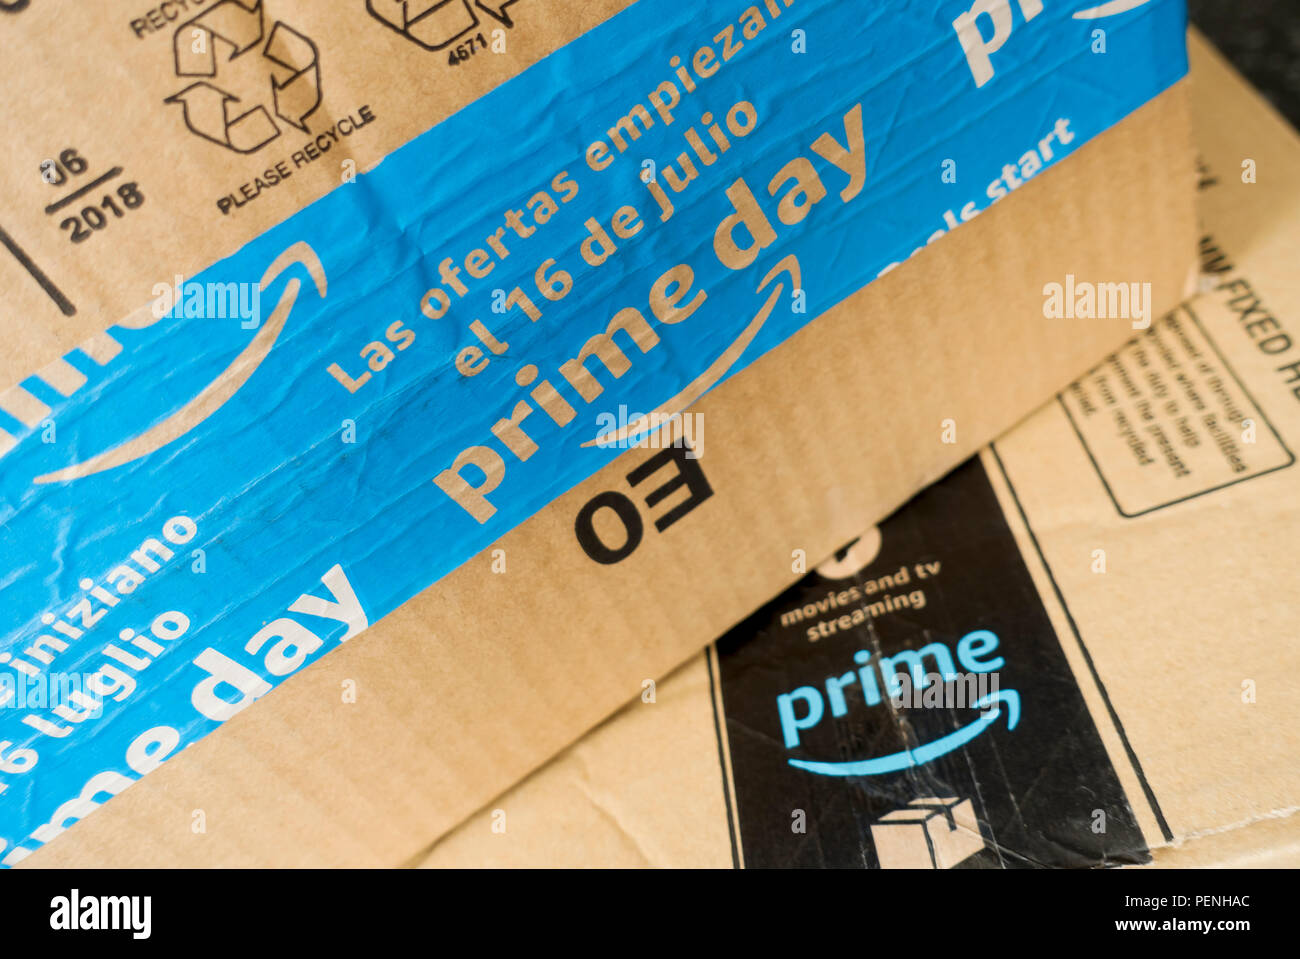 Nahaufnahme von Amazon Prime Box Packages Lieferung England Großbritannien  GB Großbritannien Stockfotografie - Alamy